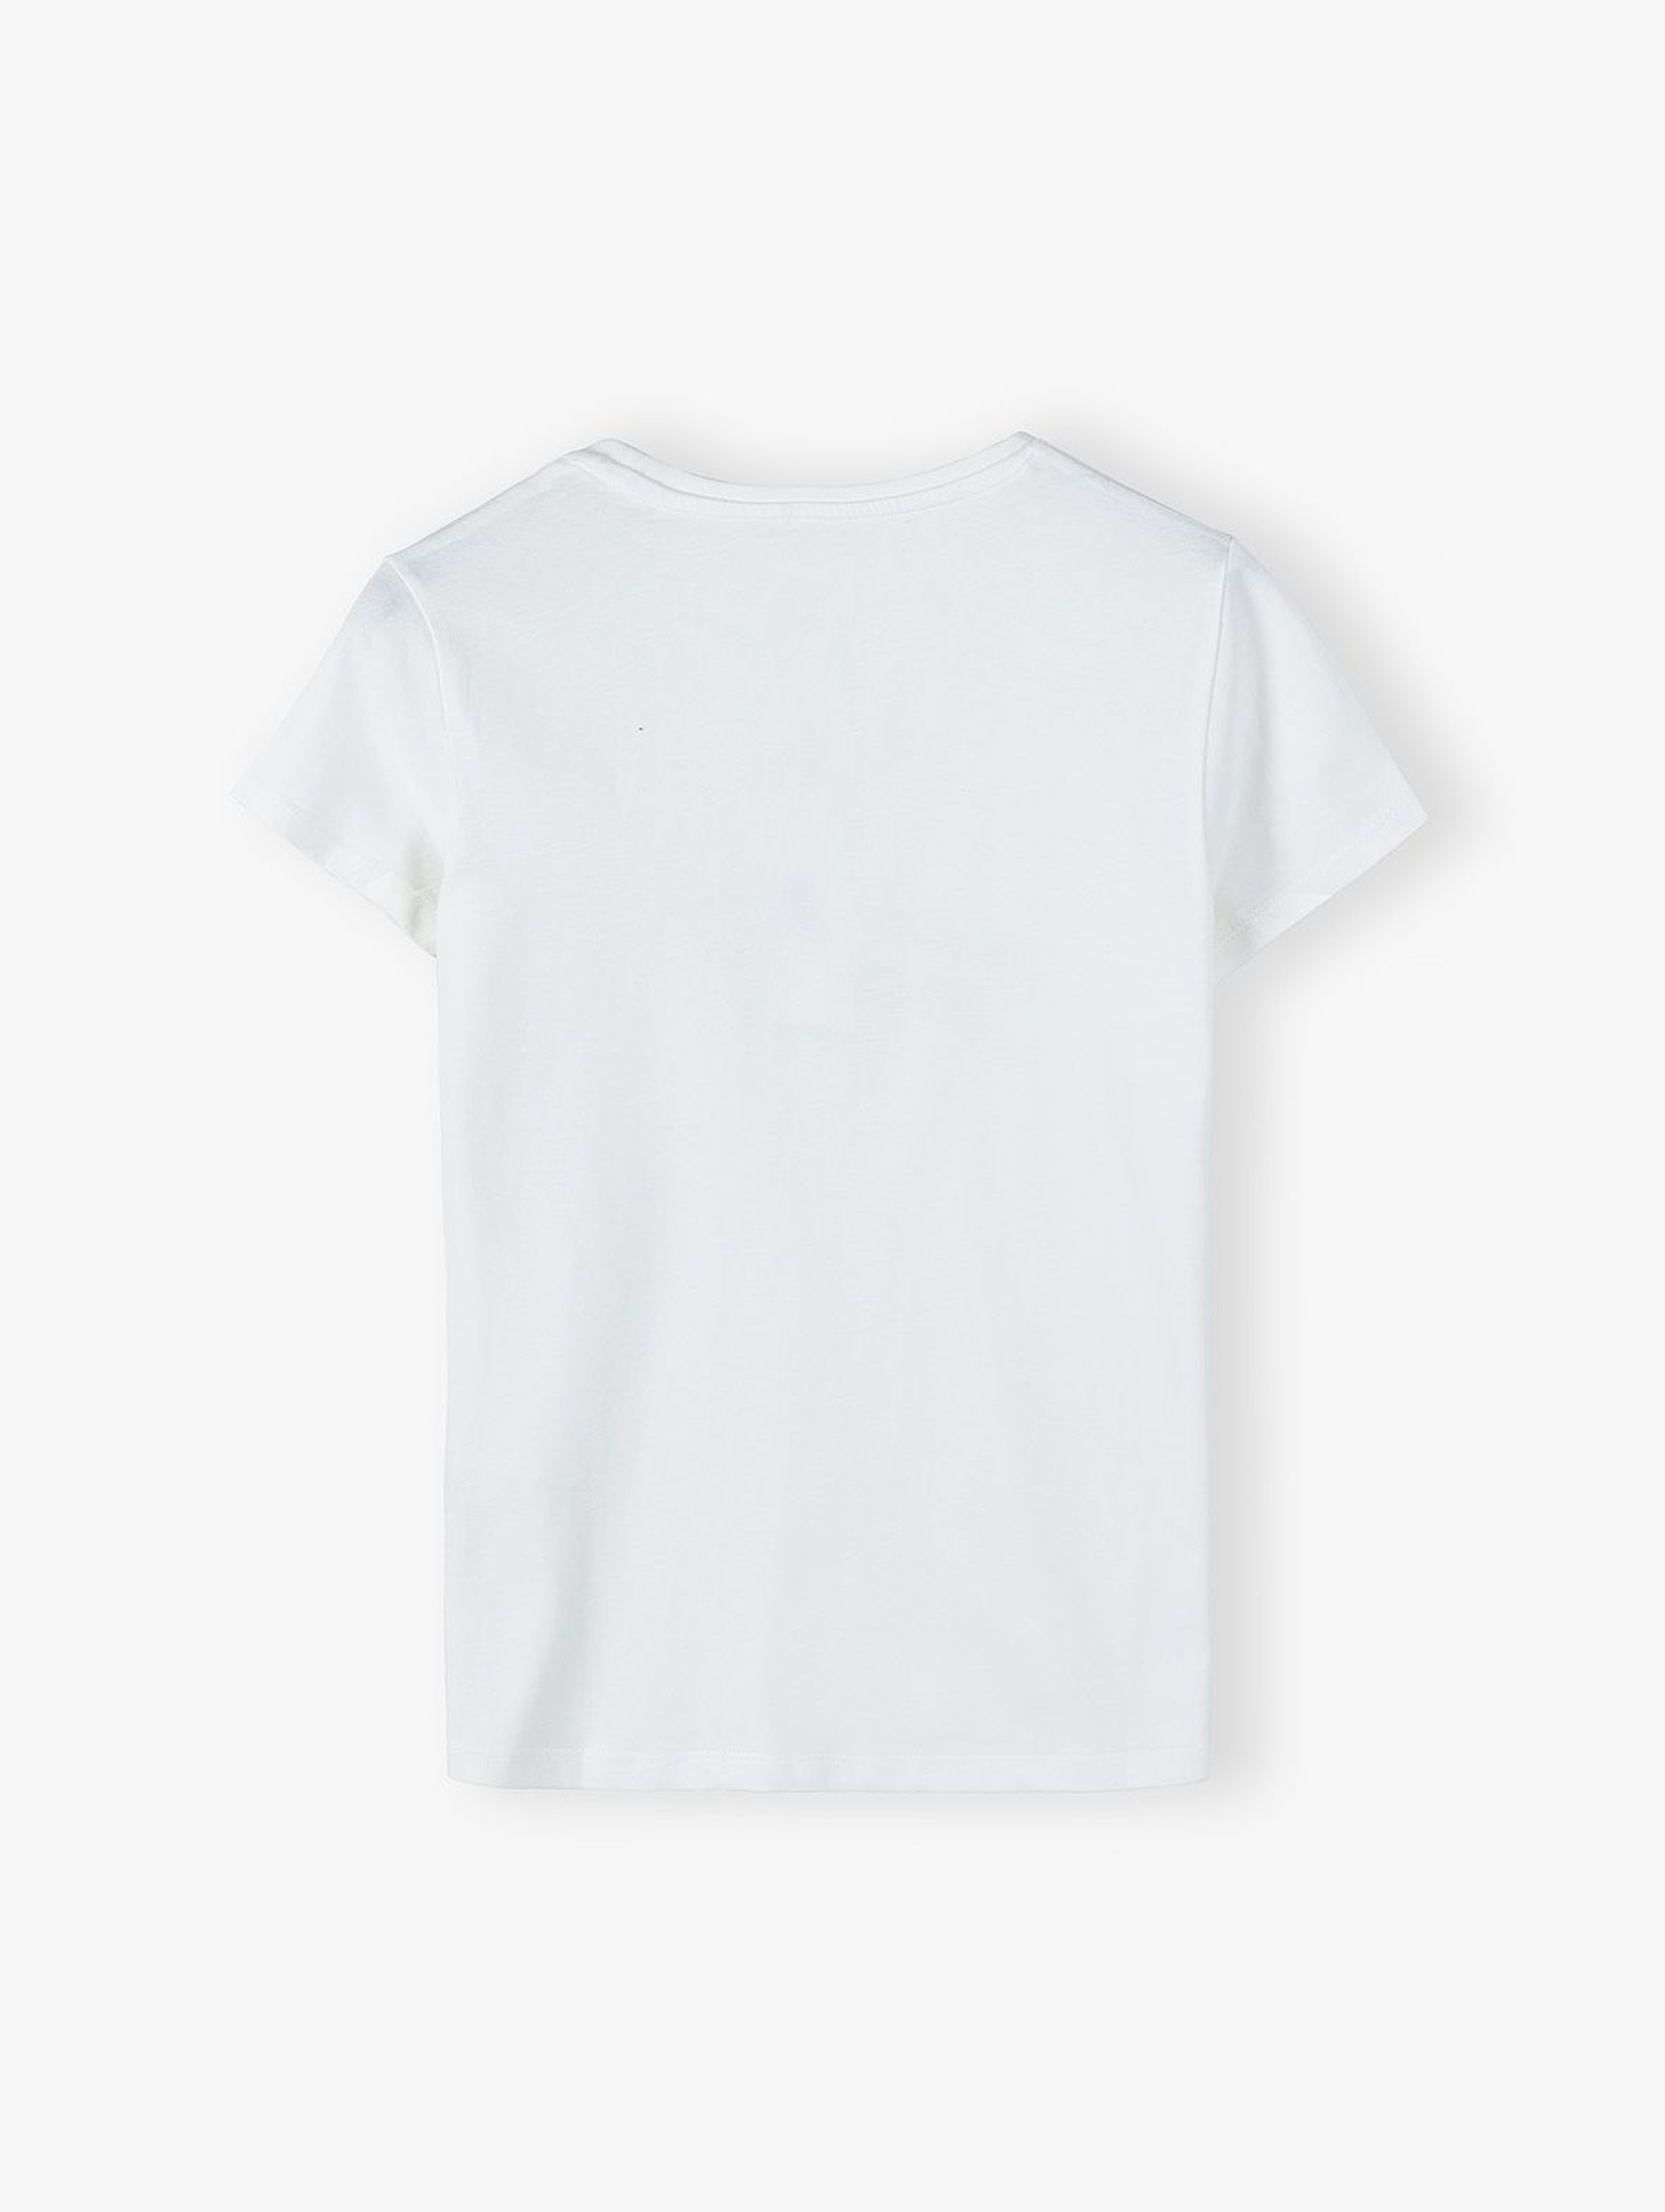 Bawełniany t-shirt damski biały - 100% idealna mama